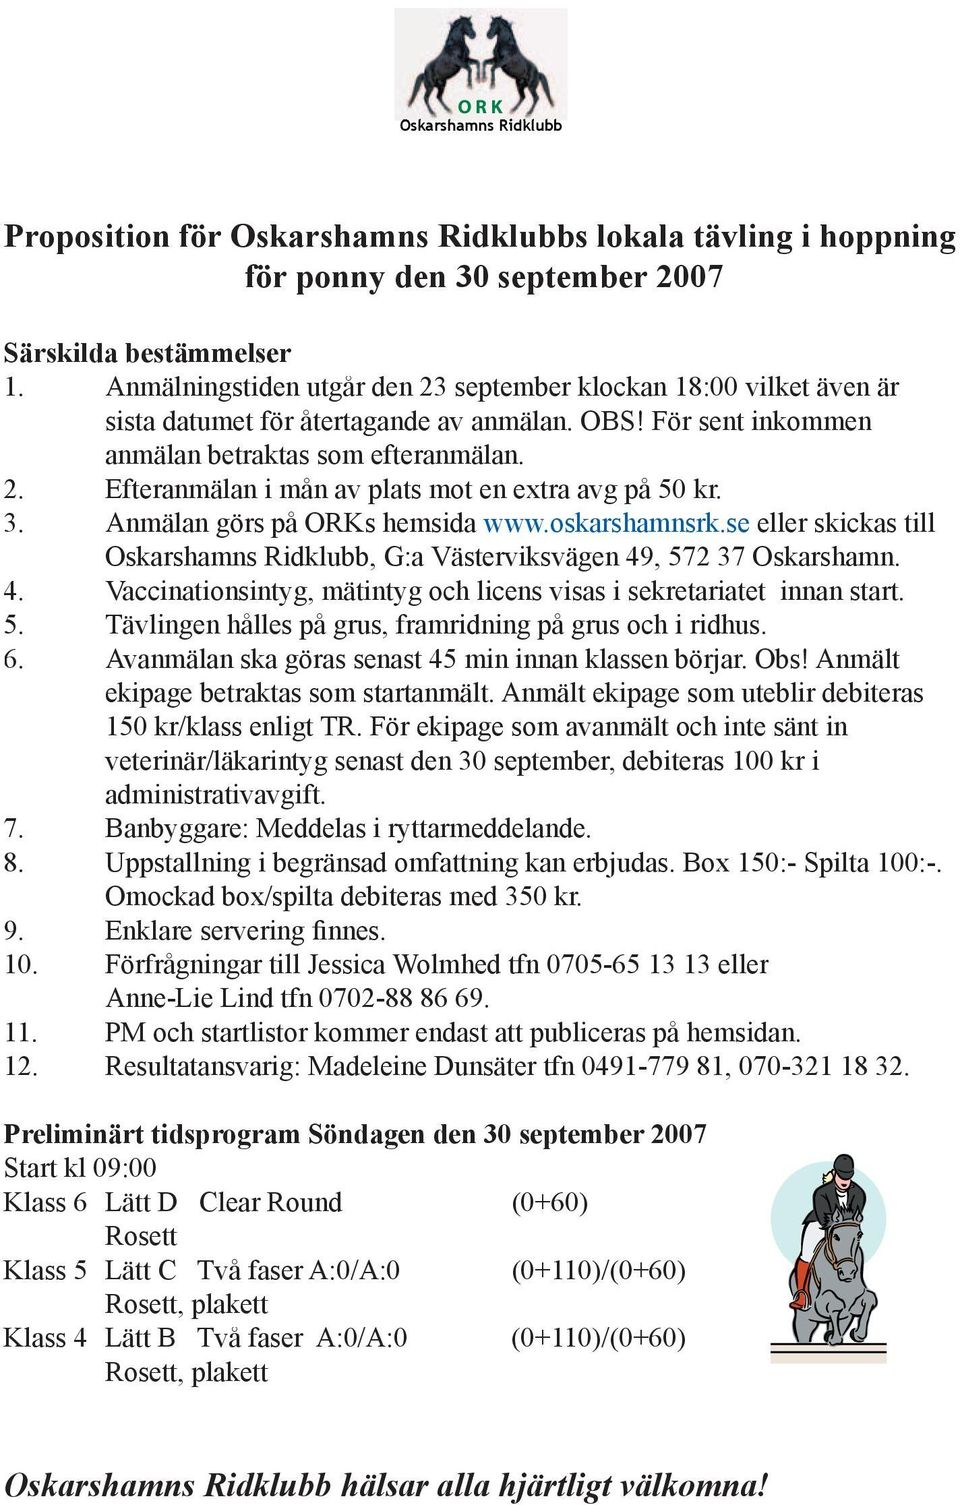 3. Anmälan görs på ORKs hemsida www.oskarshamnsrk.se eller skickas till Oskarshamns Ridklubb, G:a Västerviksvägen 49, 572 37 Oskarshamn. 4. Vaccinationsintyg, mätintyg och licens visas i sekretariatet innan start.